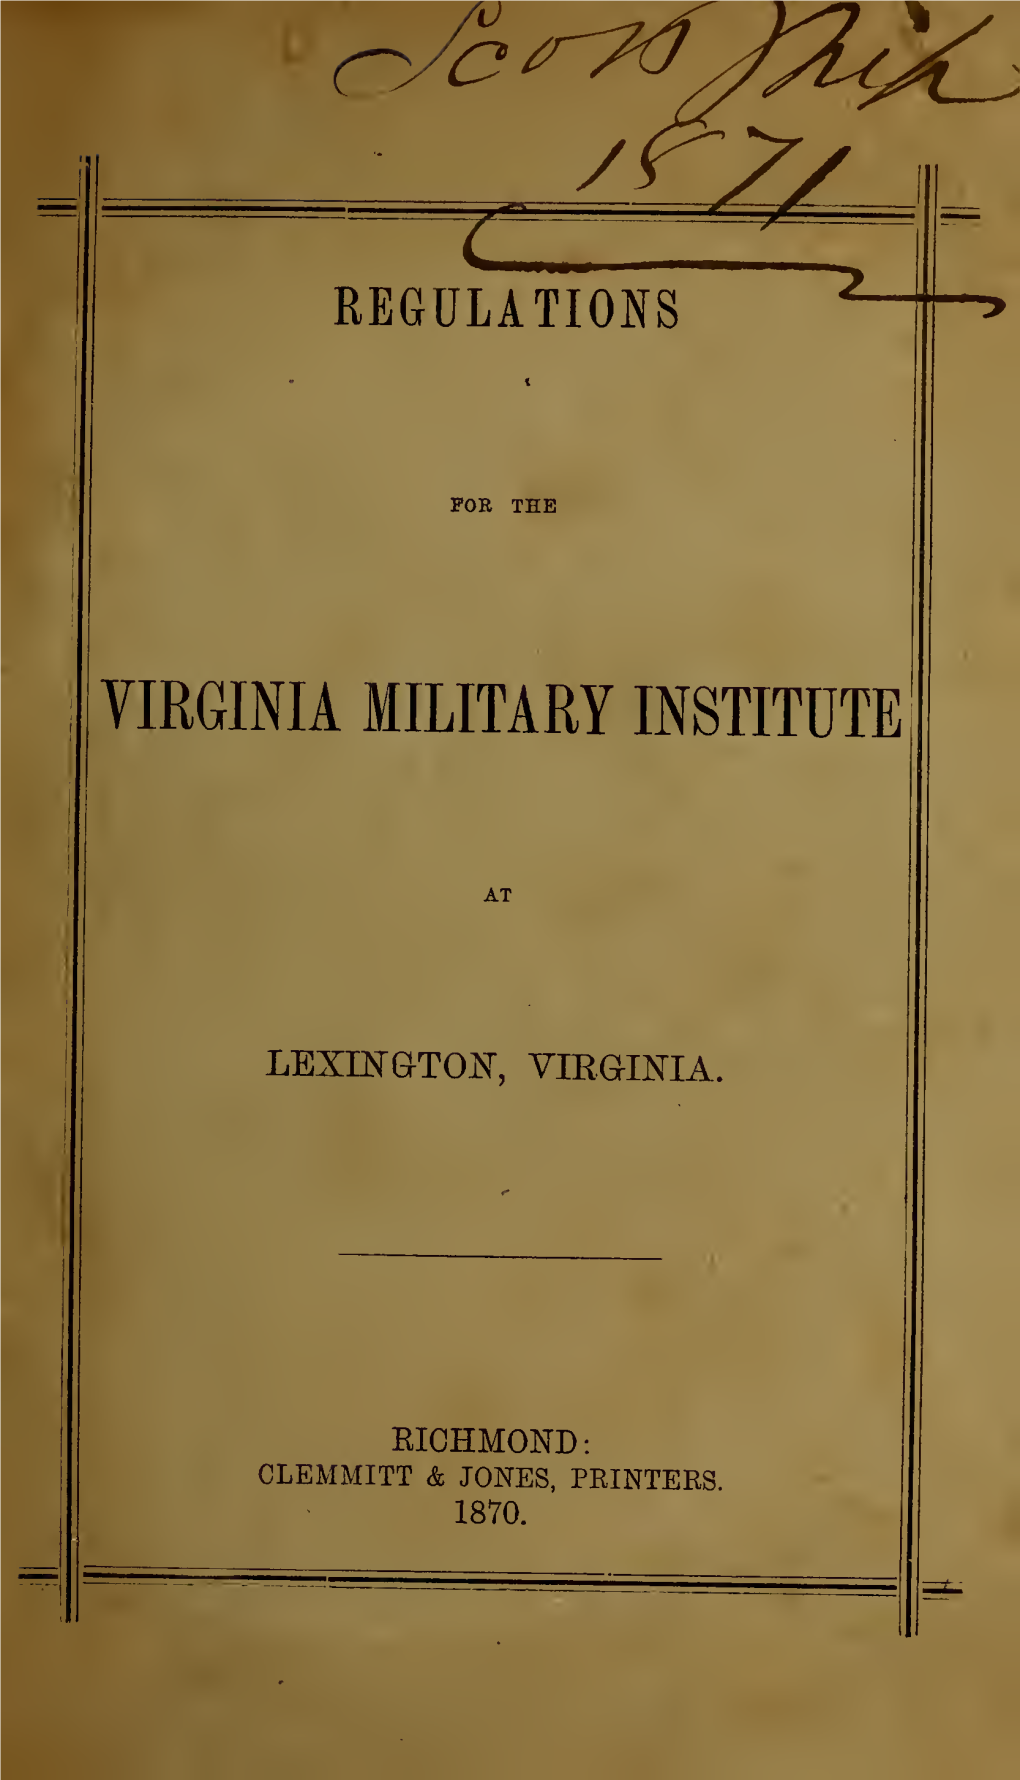 Regulations of the Virginia Military Institute